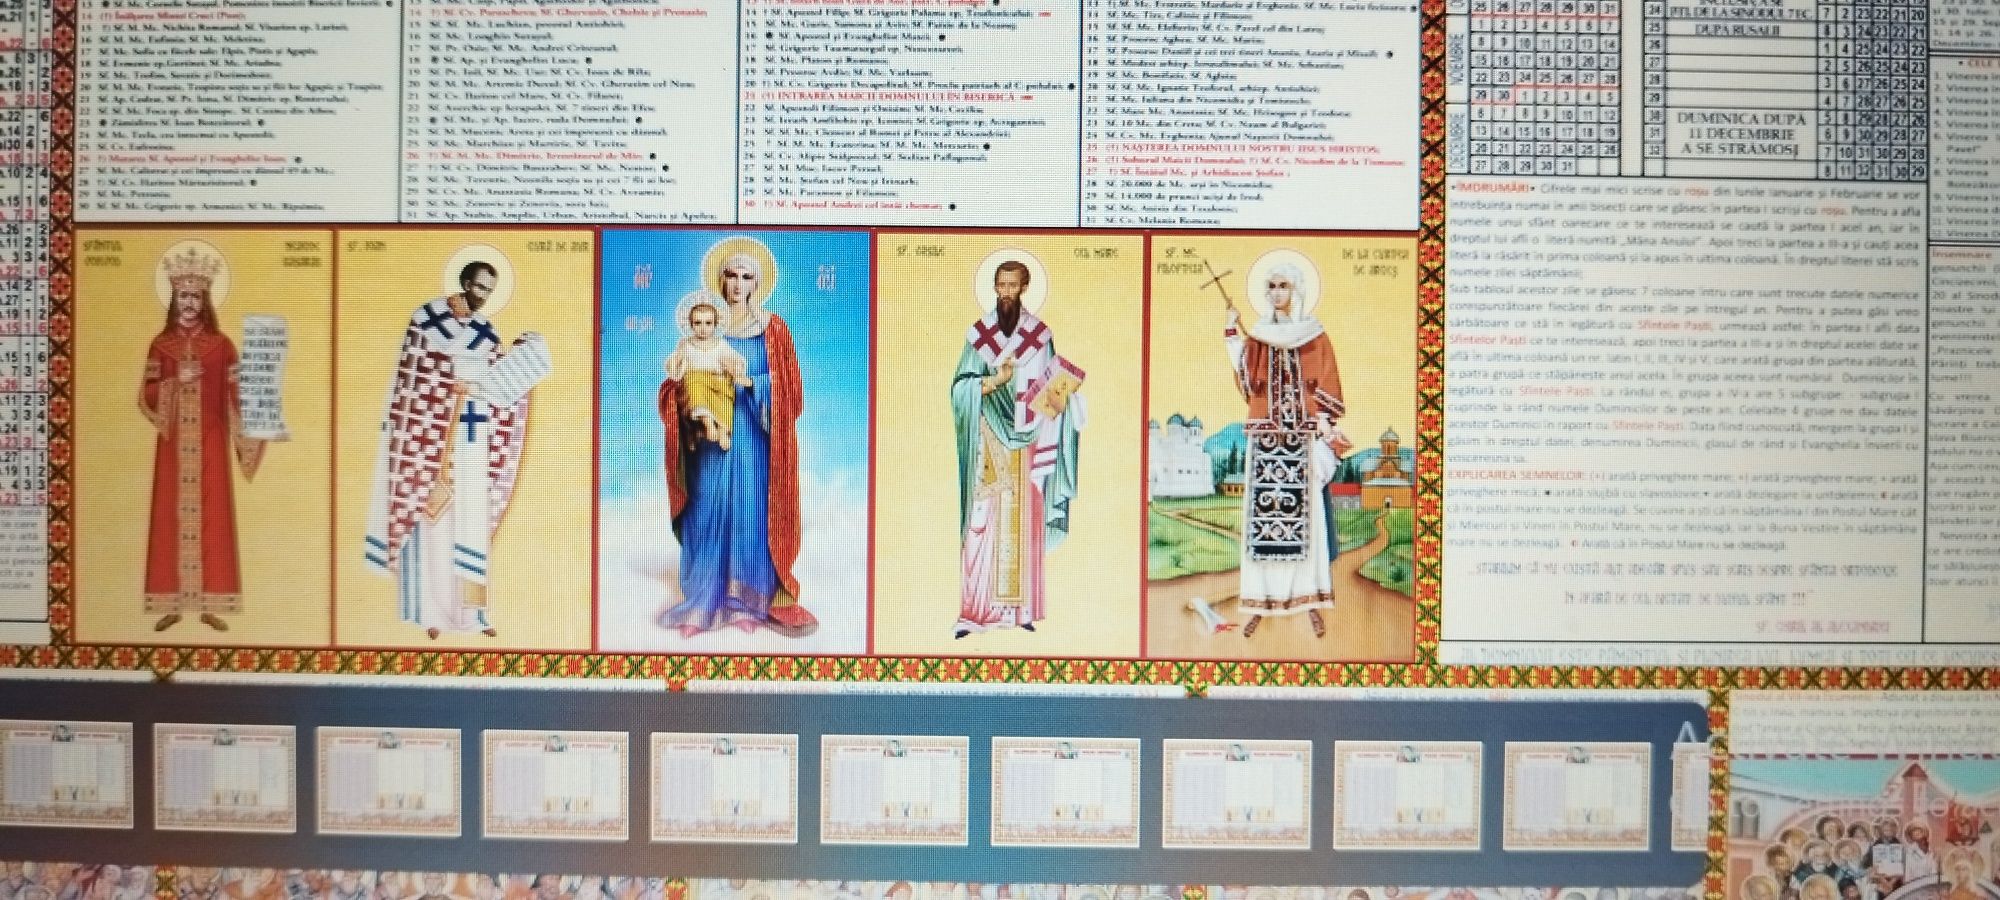 Calendare creștin ortodoxe,unice in lume pentru totdeauna